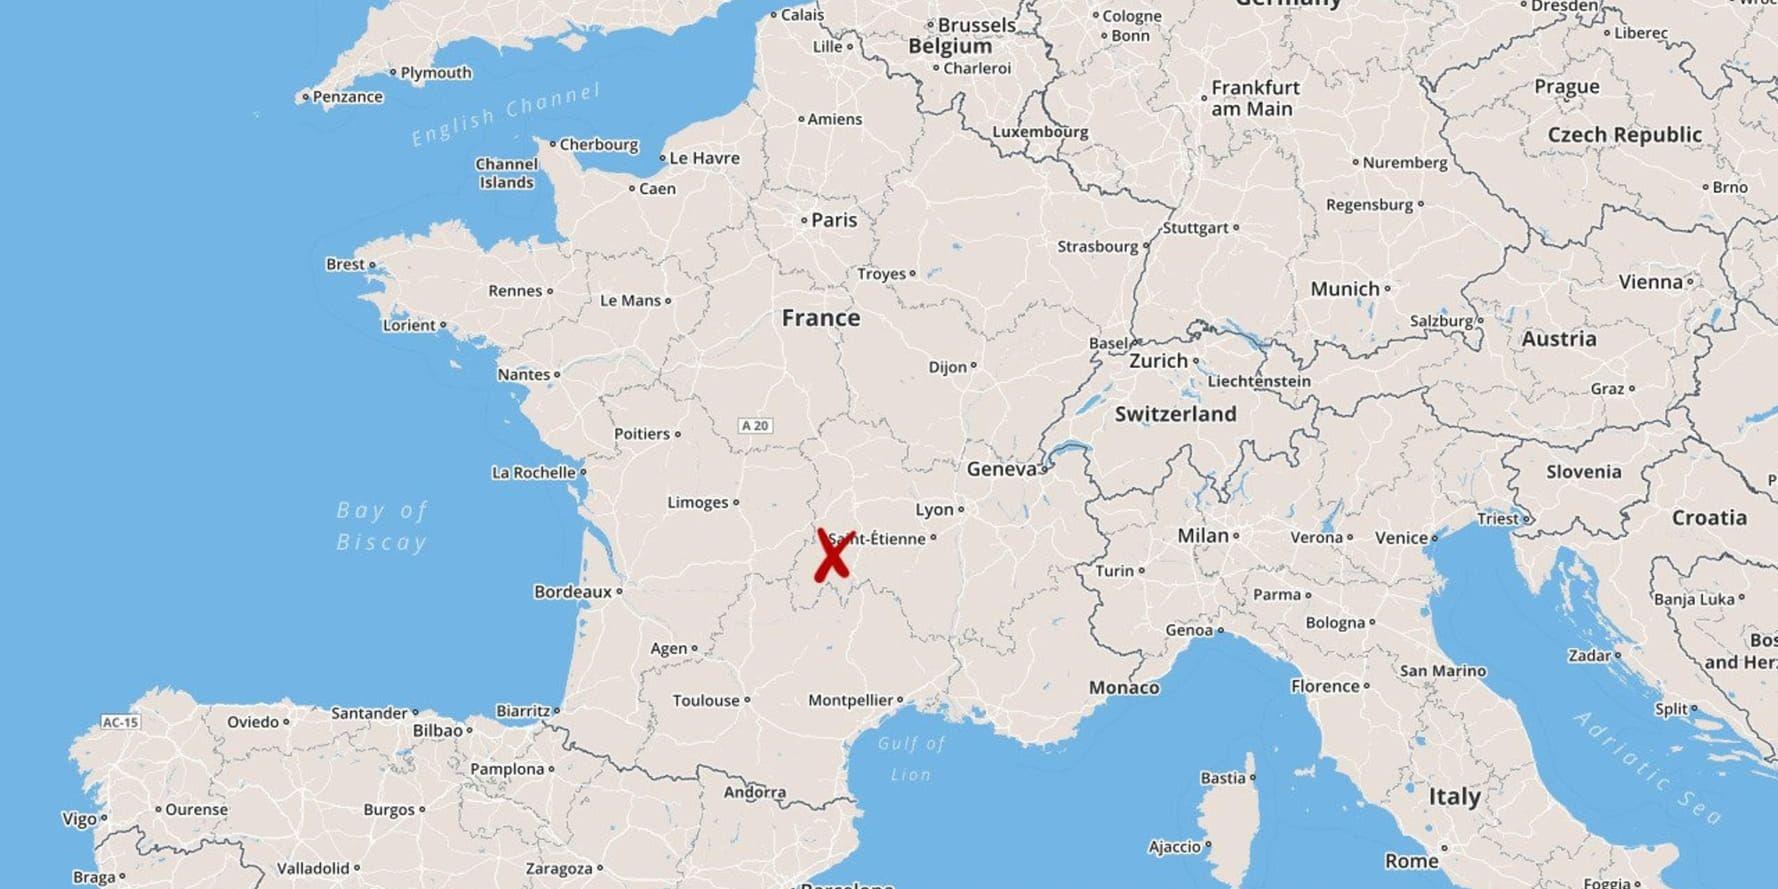 En man i 40-årsåldern och hans 14-åriga tvillingdöttrar omkom när ett lätt enmotorig flygplan kraschade och bröts sönder i Mazoires i Frankrike.